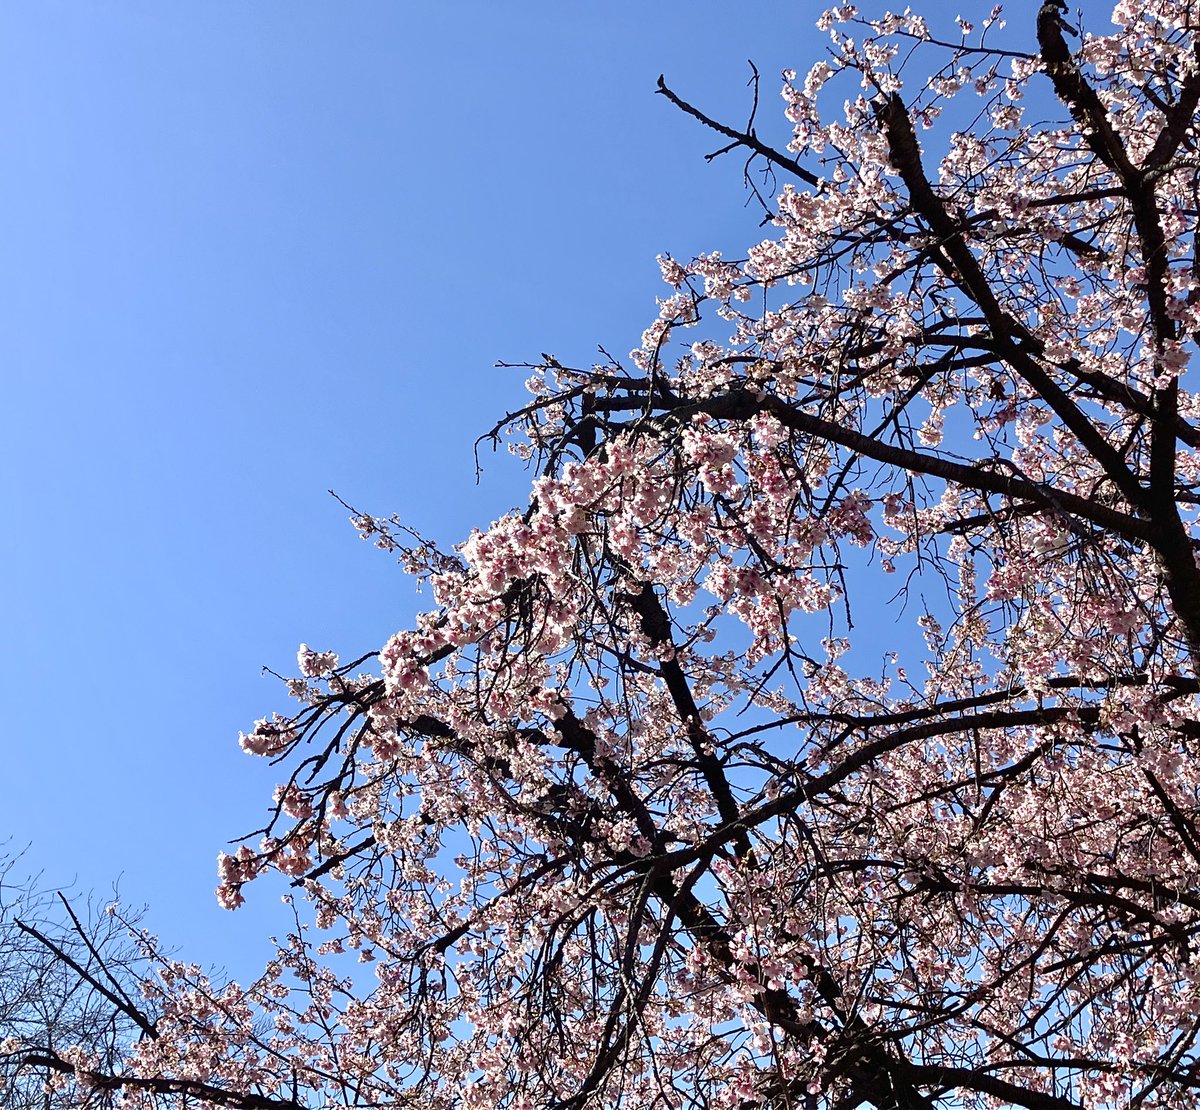 「今日は咲き始めた桜をチラリと見ることができ嬉しくなりました。 」|なかたこつぶのイラスト